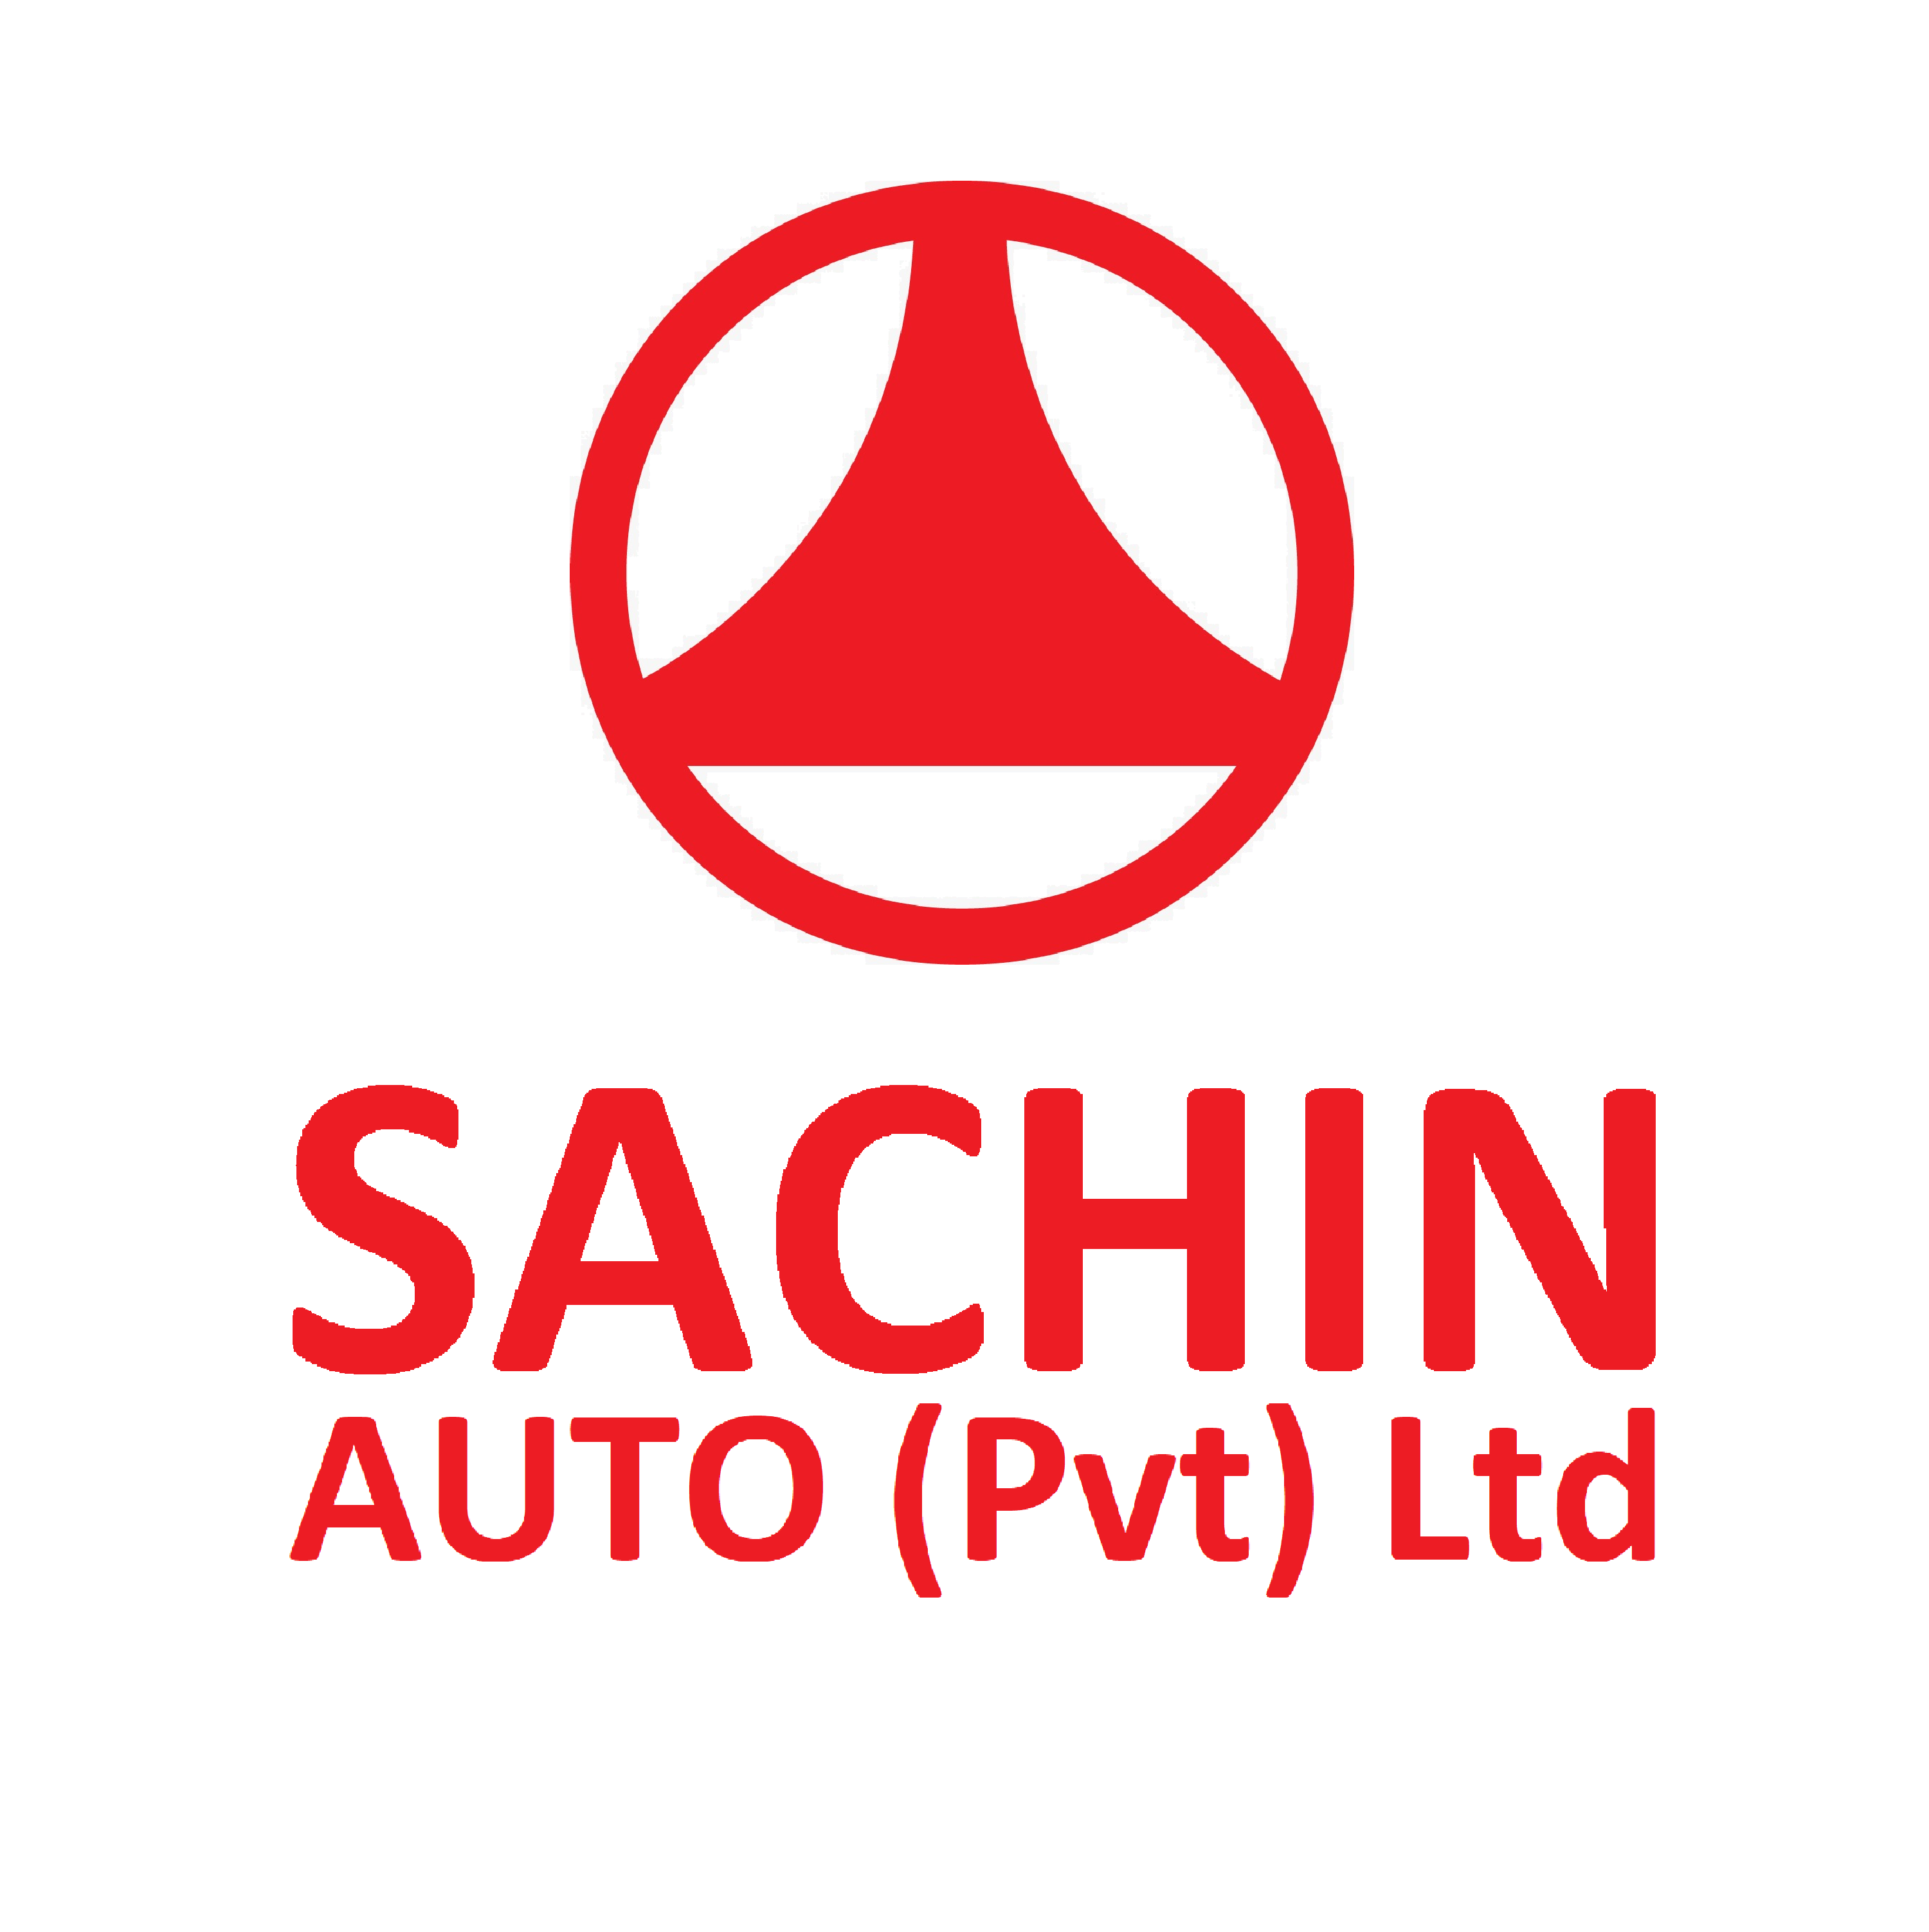 Sachin Auto Pvt Ltd